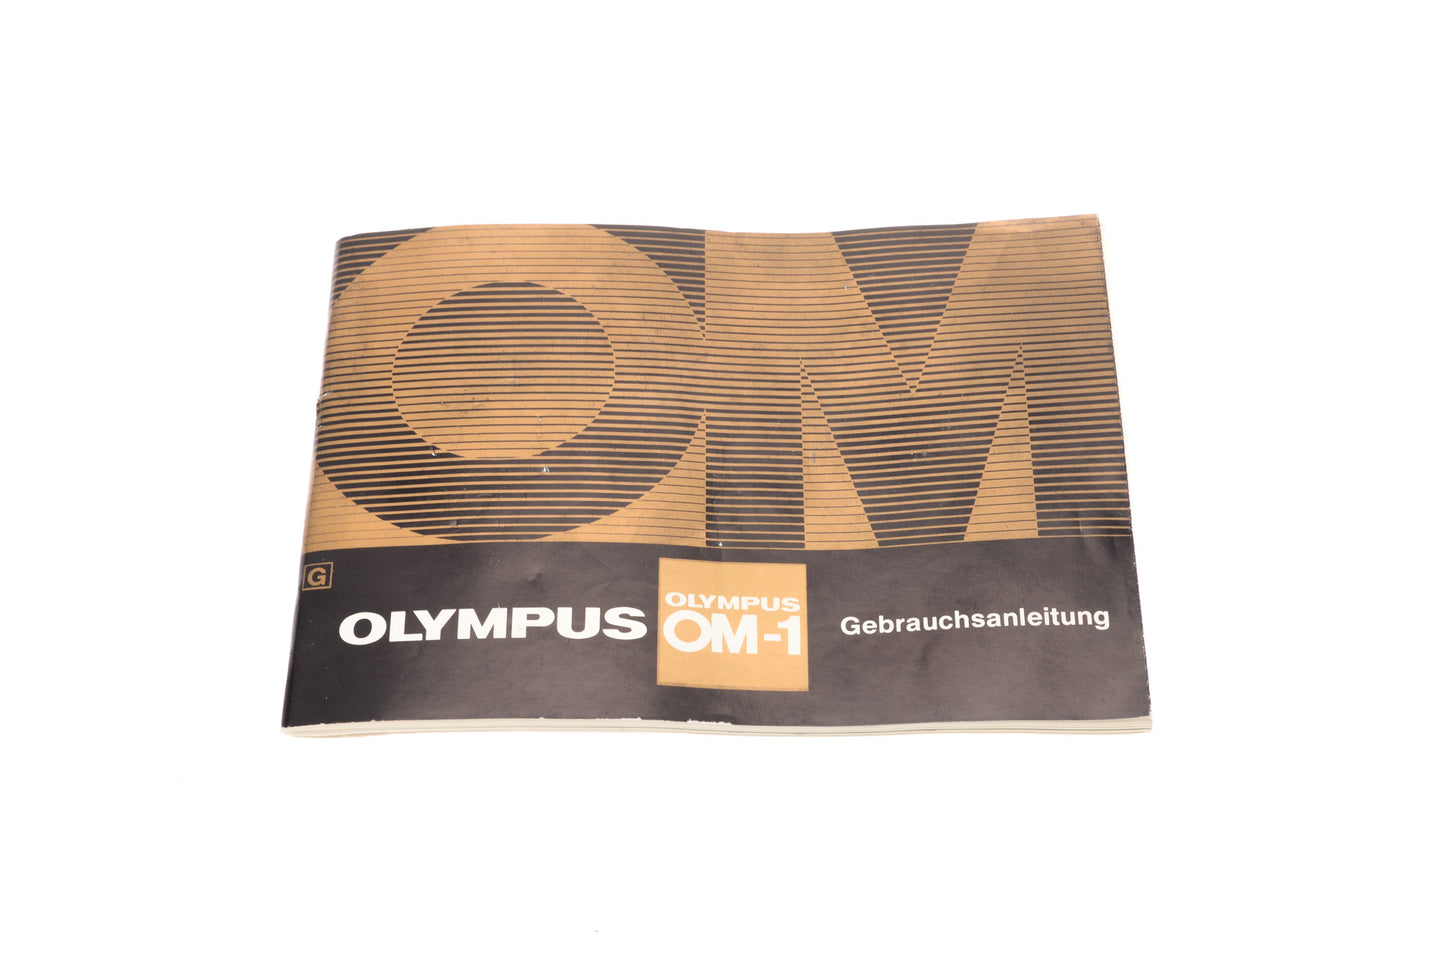 Olympus OM-1 Gebrauchsanleitung - Accessory